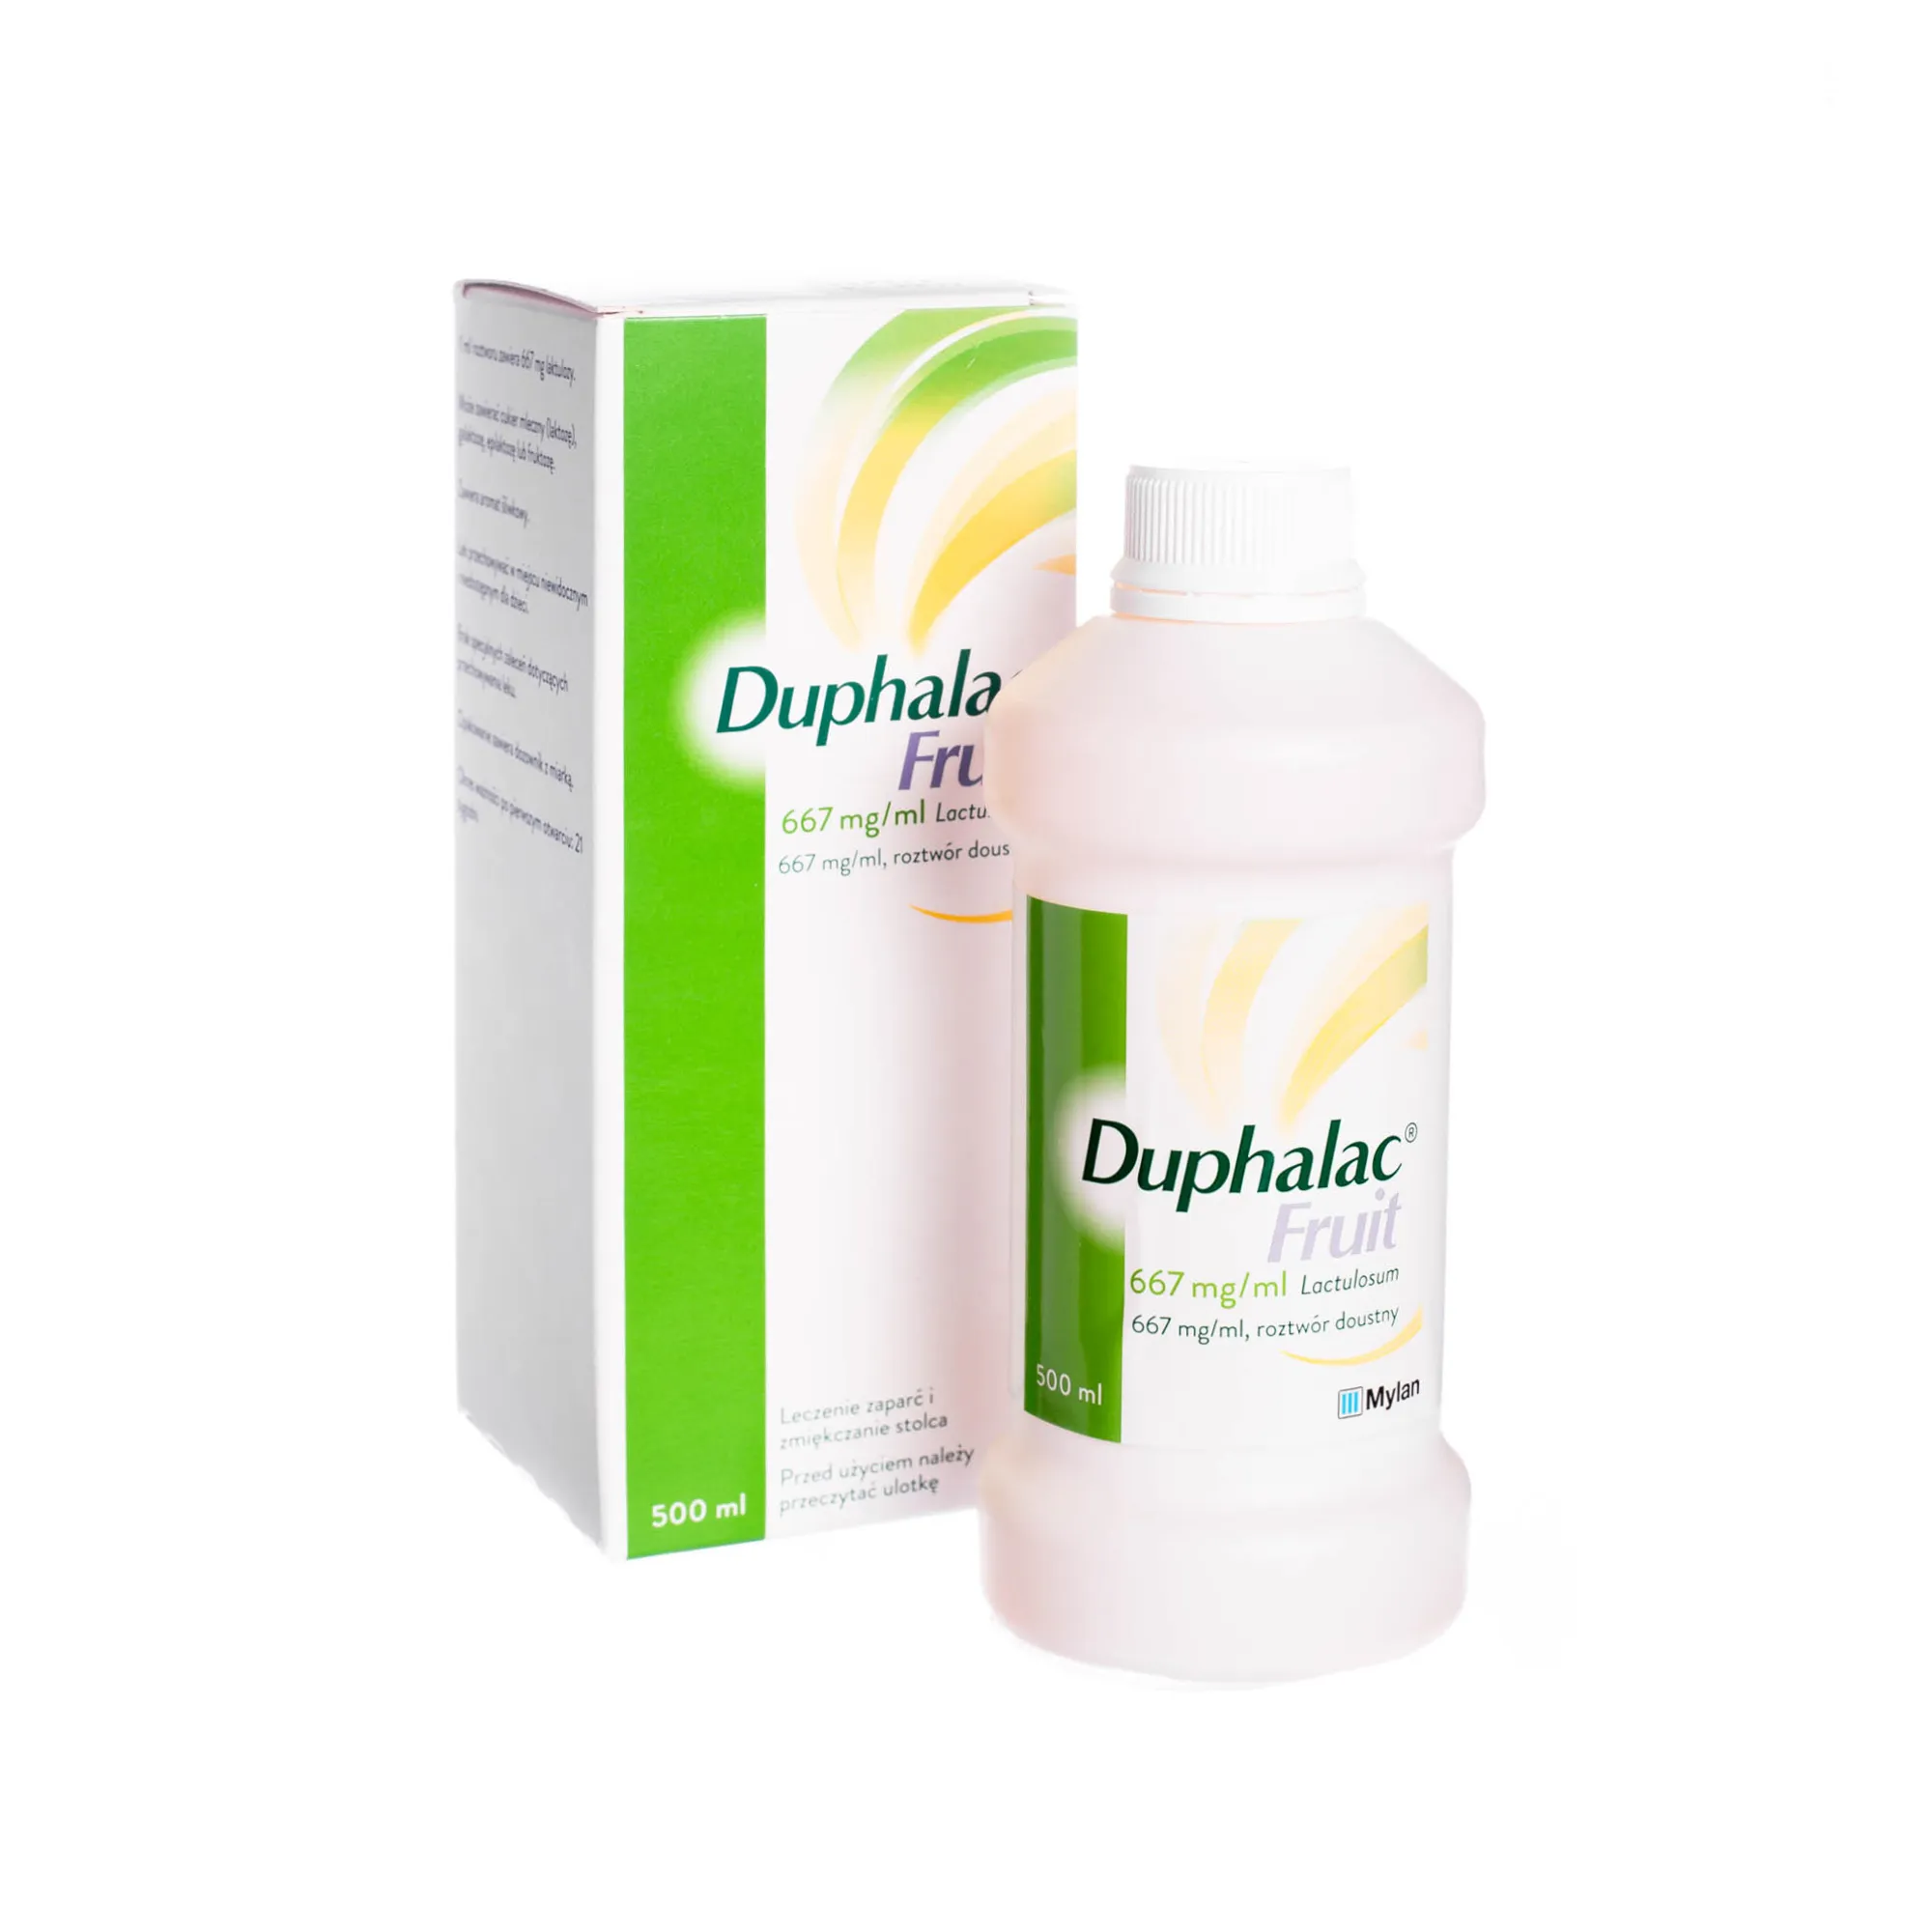 Duphalac Fruit - Lek stosowany przy leczeniu zaparć i zmiękczenia stolca, 500 ml 